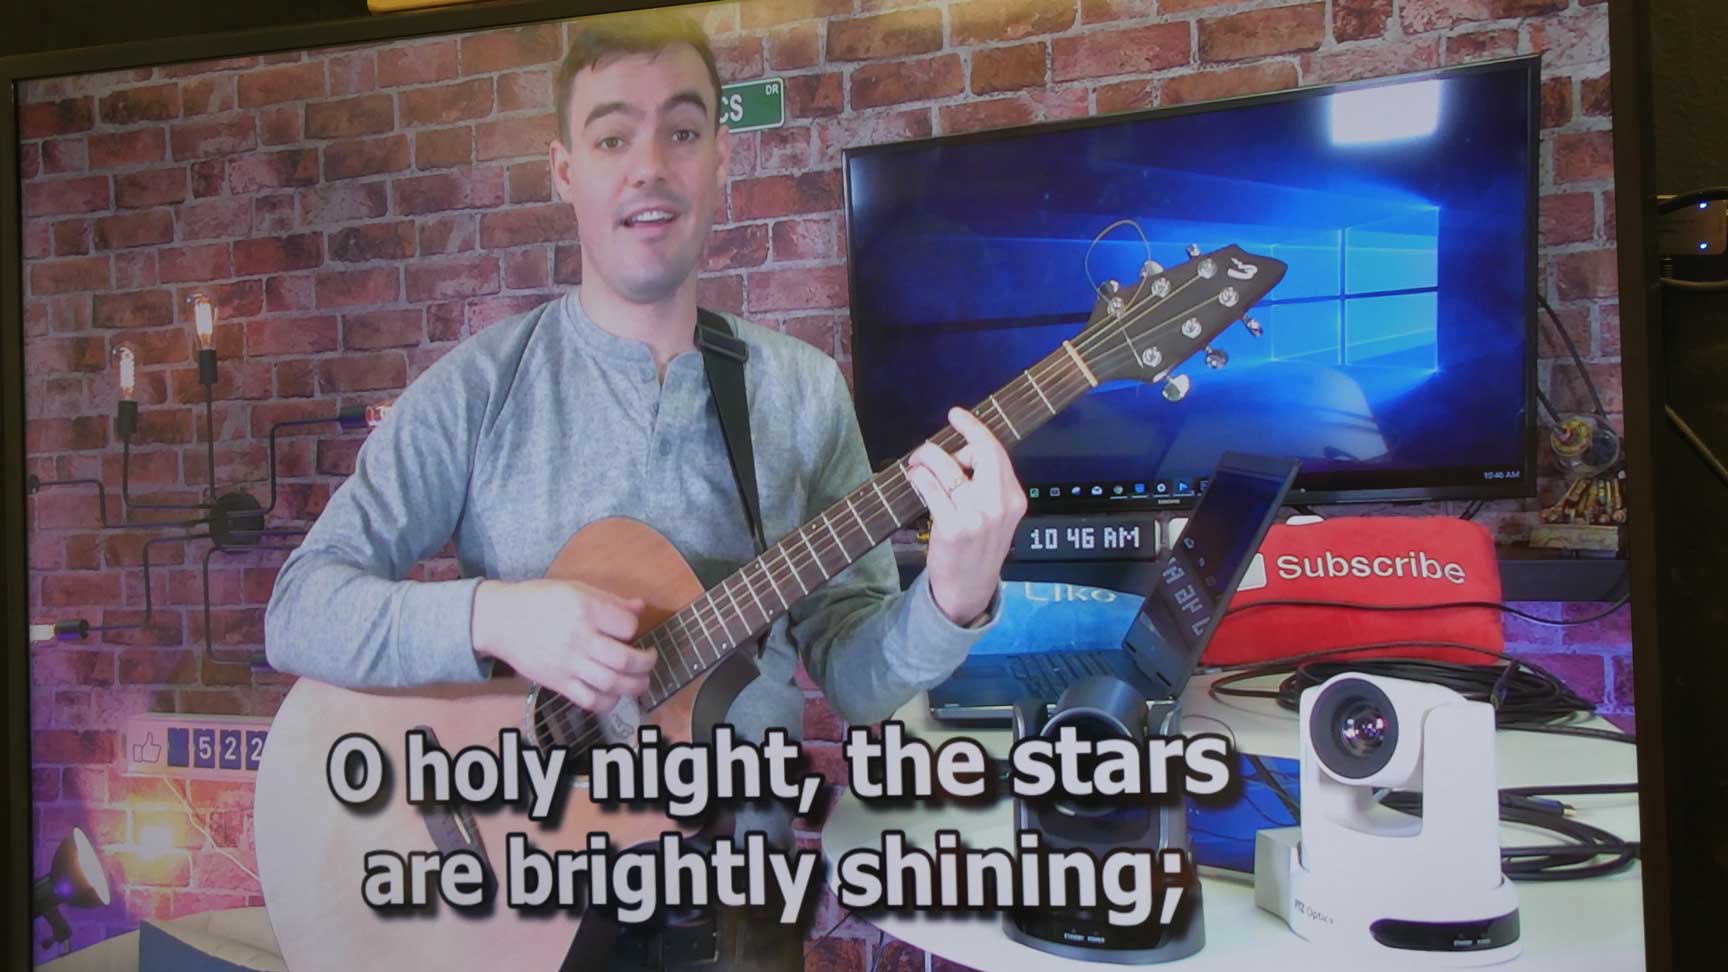 Church lyrics overlaid over video feed